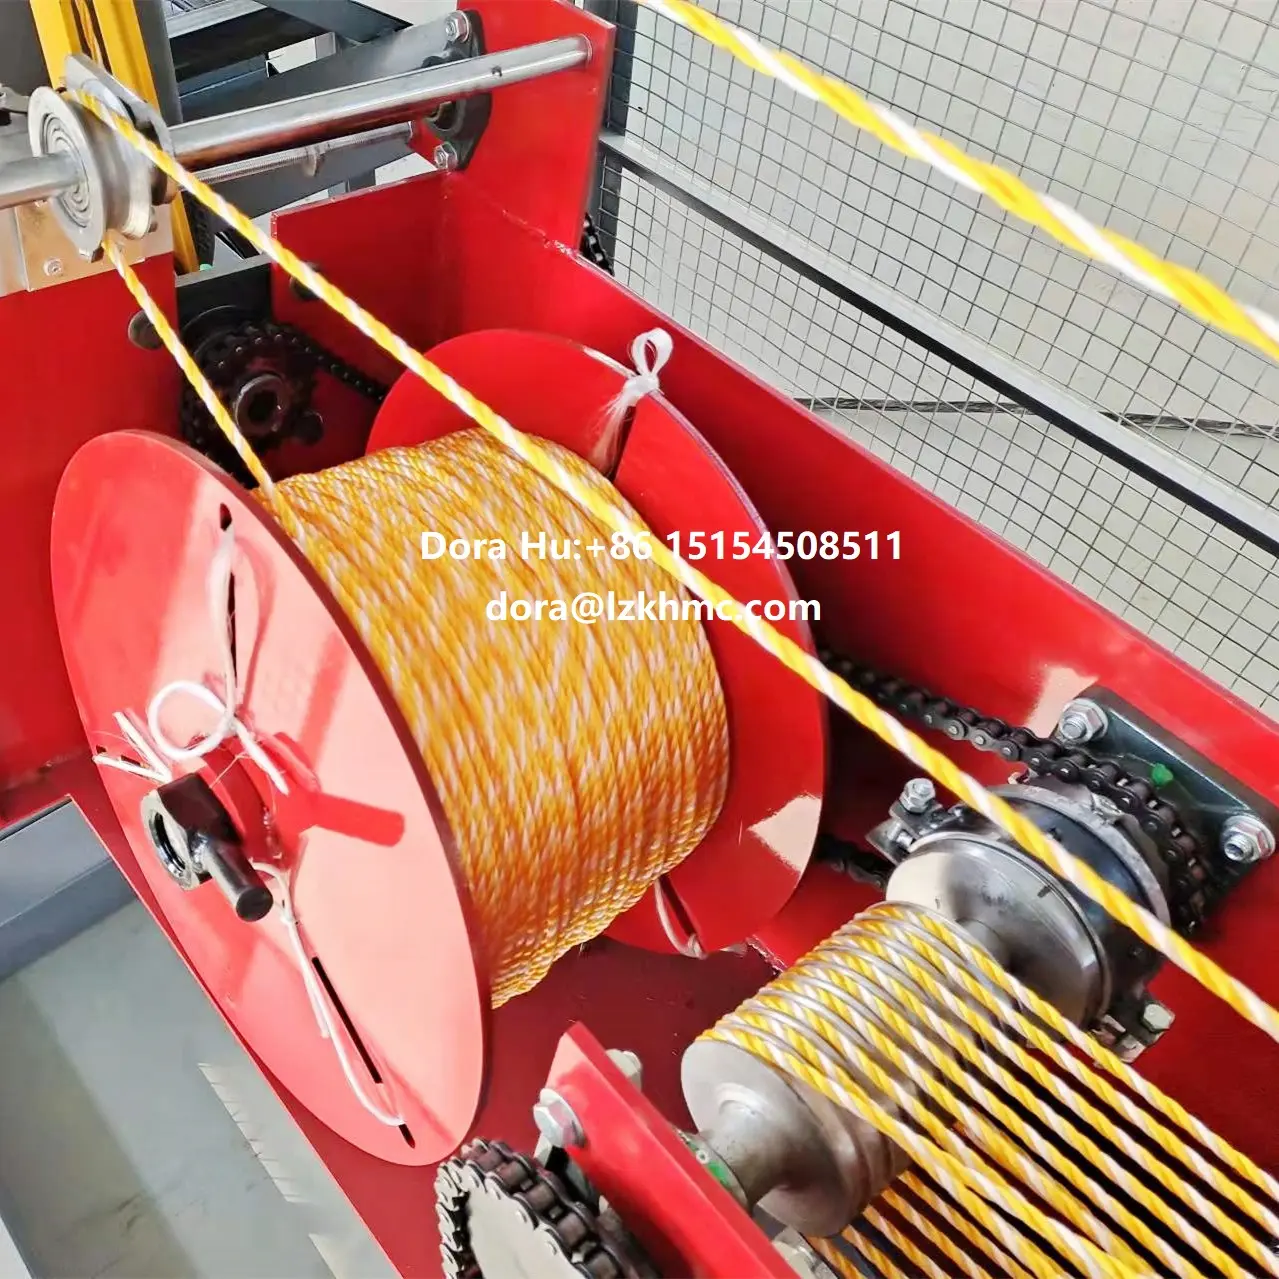 ポリエステル糸製造業者がロープ製造機/3プライツイストロープ製造機を提供